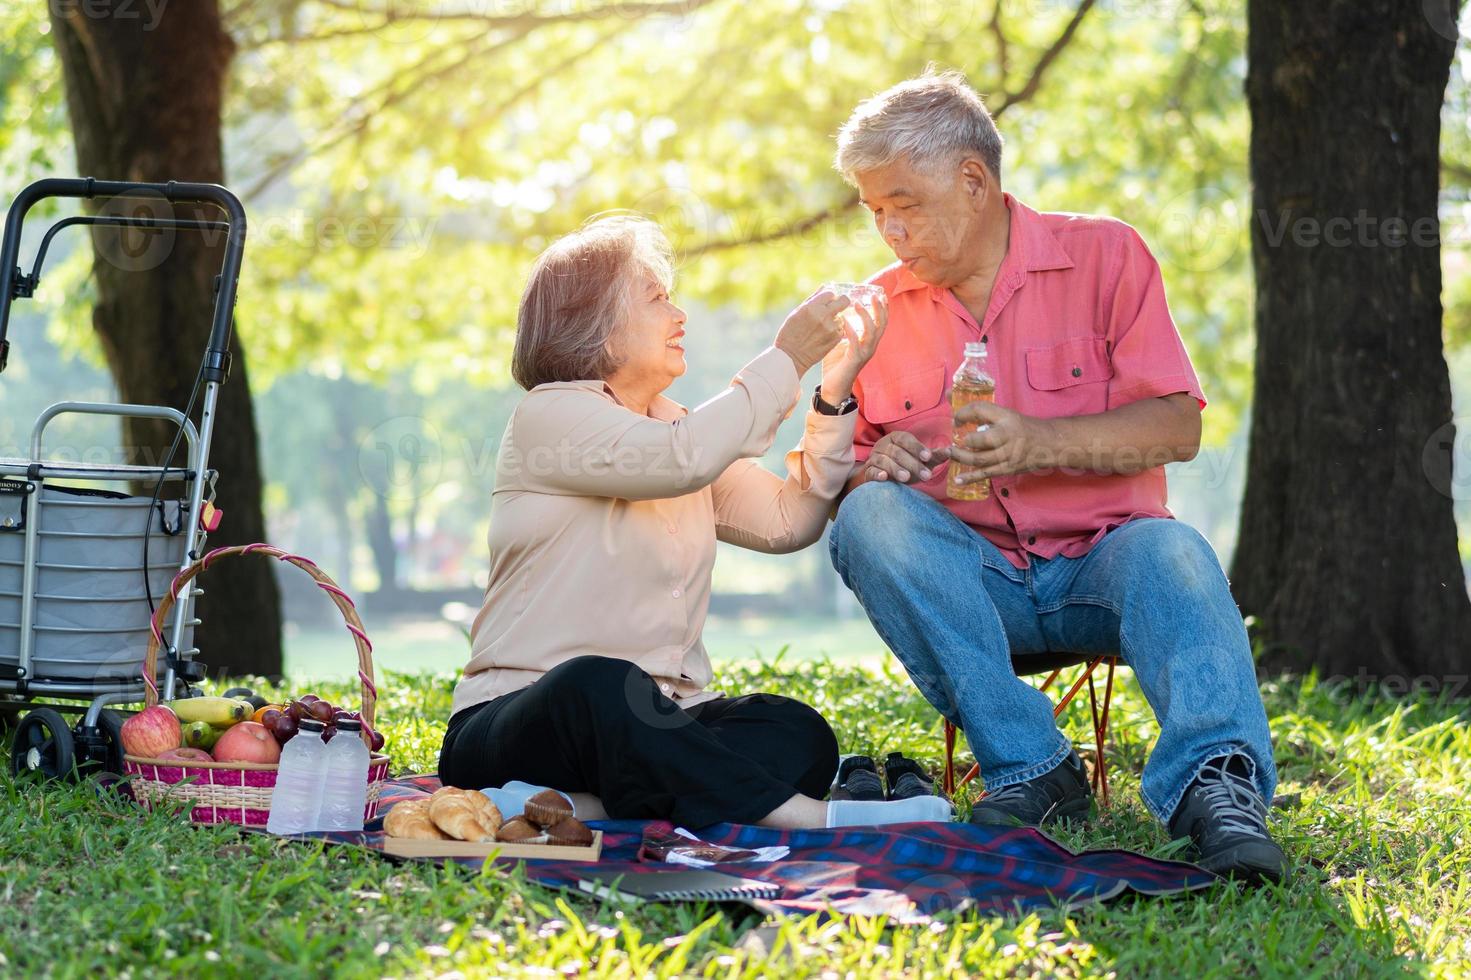 Felizes velhos cônjuges de casal de idosos relaxando e sentados em um cobertor no parque e compartilhando algumas memórias preciosas. casal sênior se divertindo juntos em um piquenique. conceito de relacionamentos maduros foto